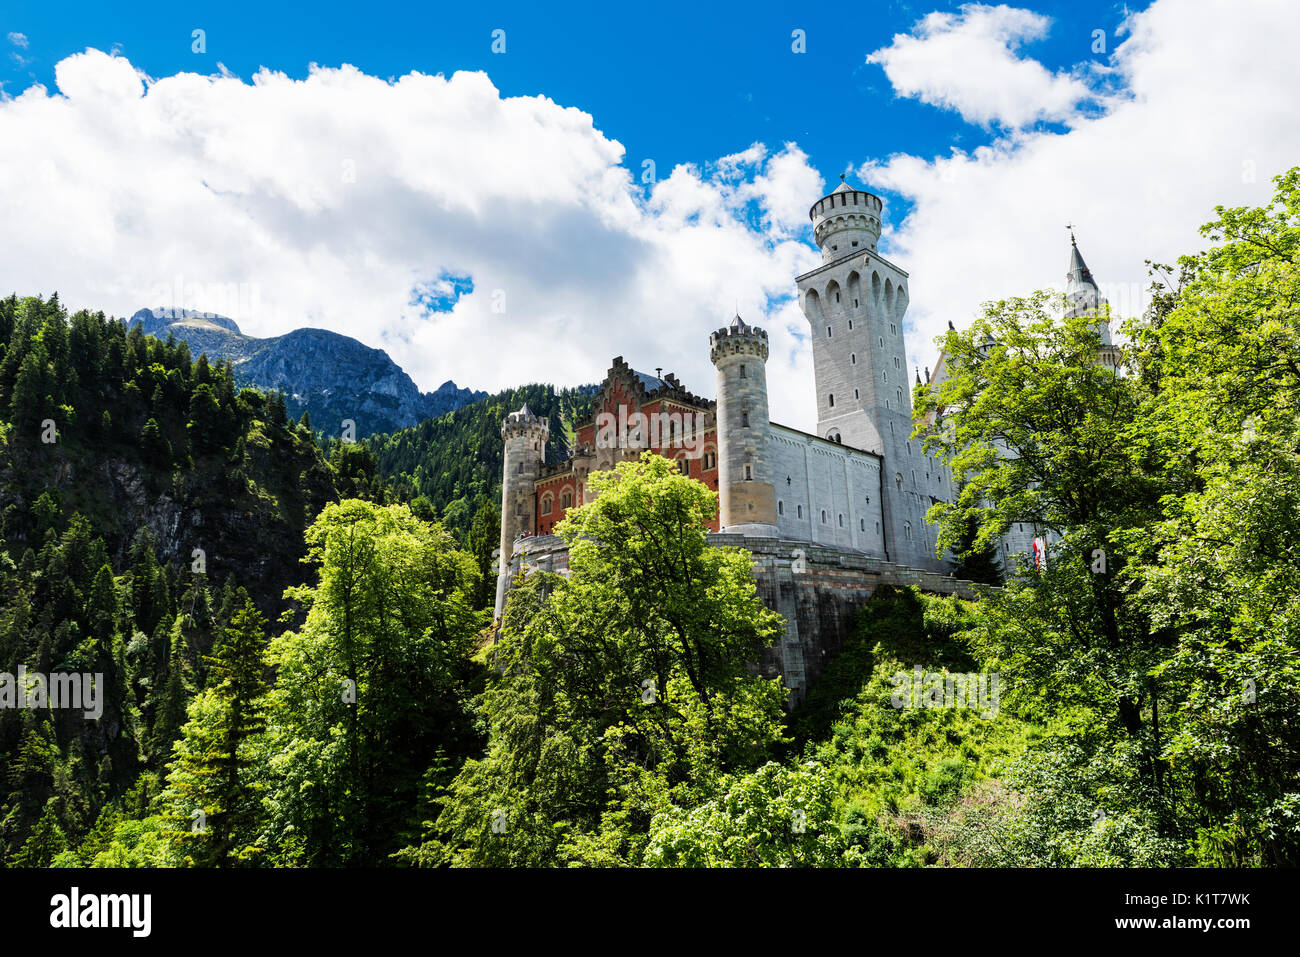 Le château de Neuschwanstein est un château très célèbre position sur une colline au-dessus de la ville allemande de Hohenschwangau près de Fussen dans la région bavaroise de l'Allemagne Banque D'Images